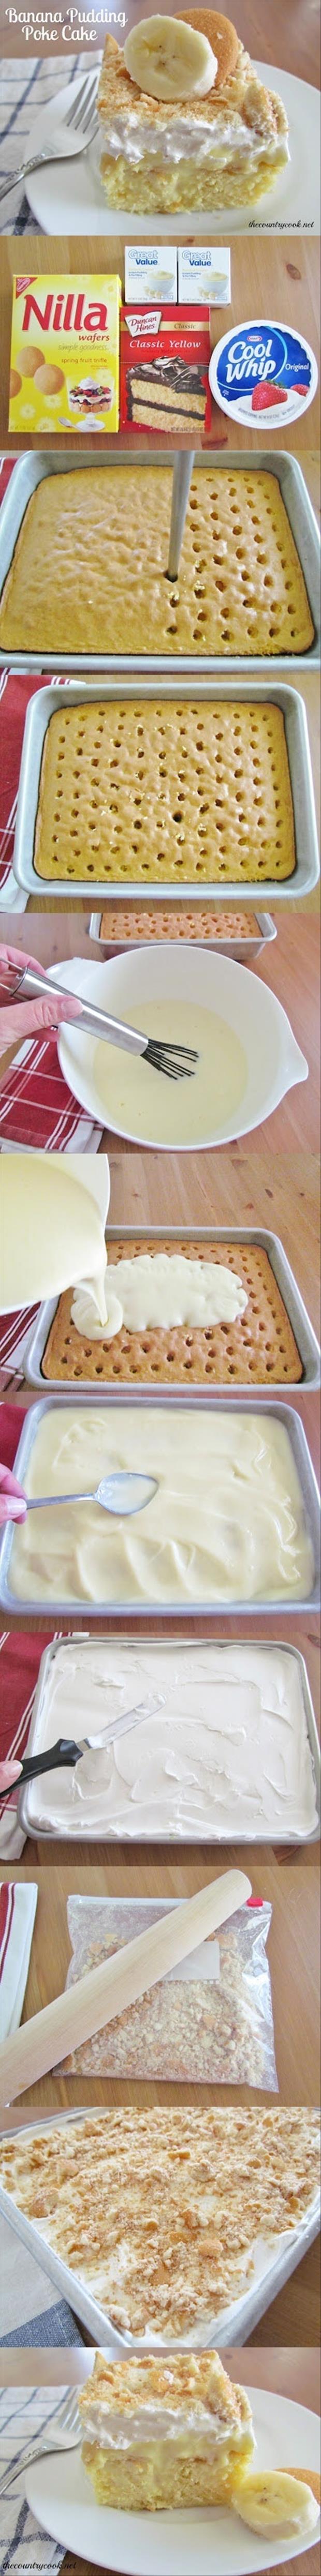 How to make banana pudding cake